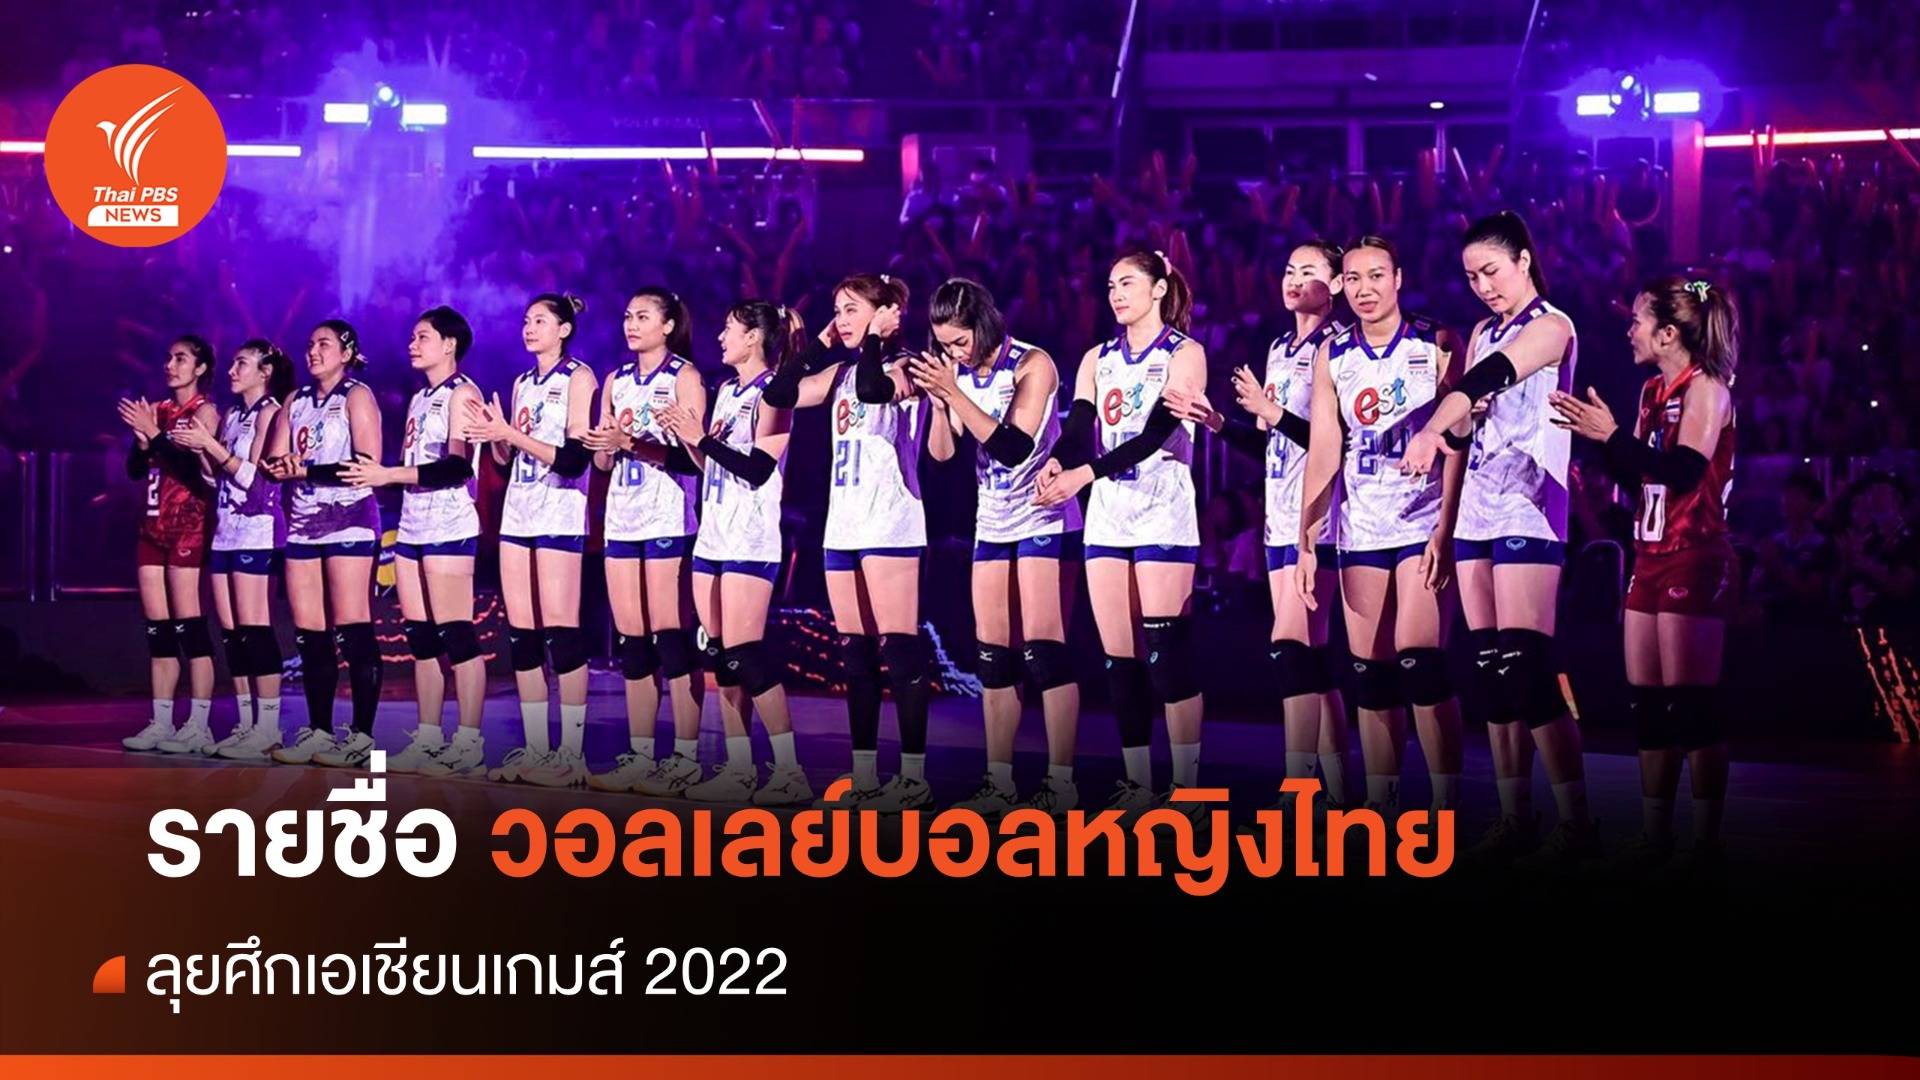 ประกาศรายชื่อ 12 นักวอลเลย์บอลหญิงไทยลุยศึกเอเชียนเกมส์